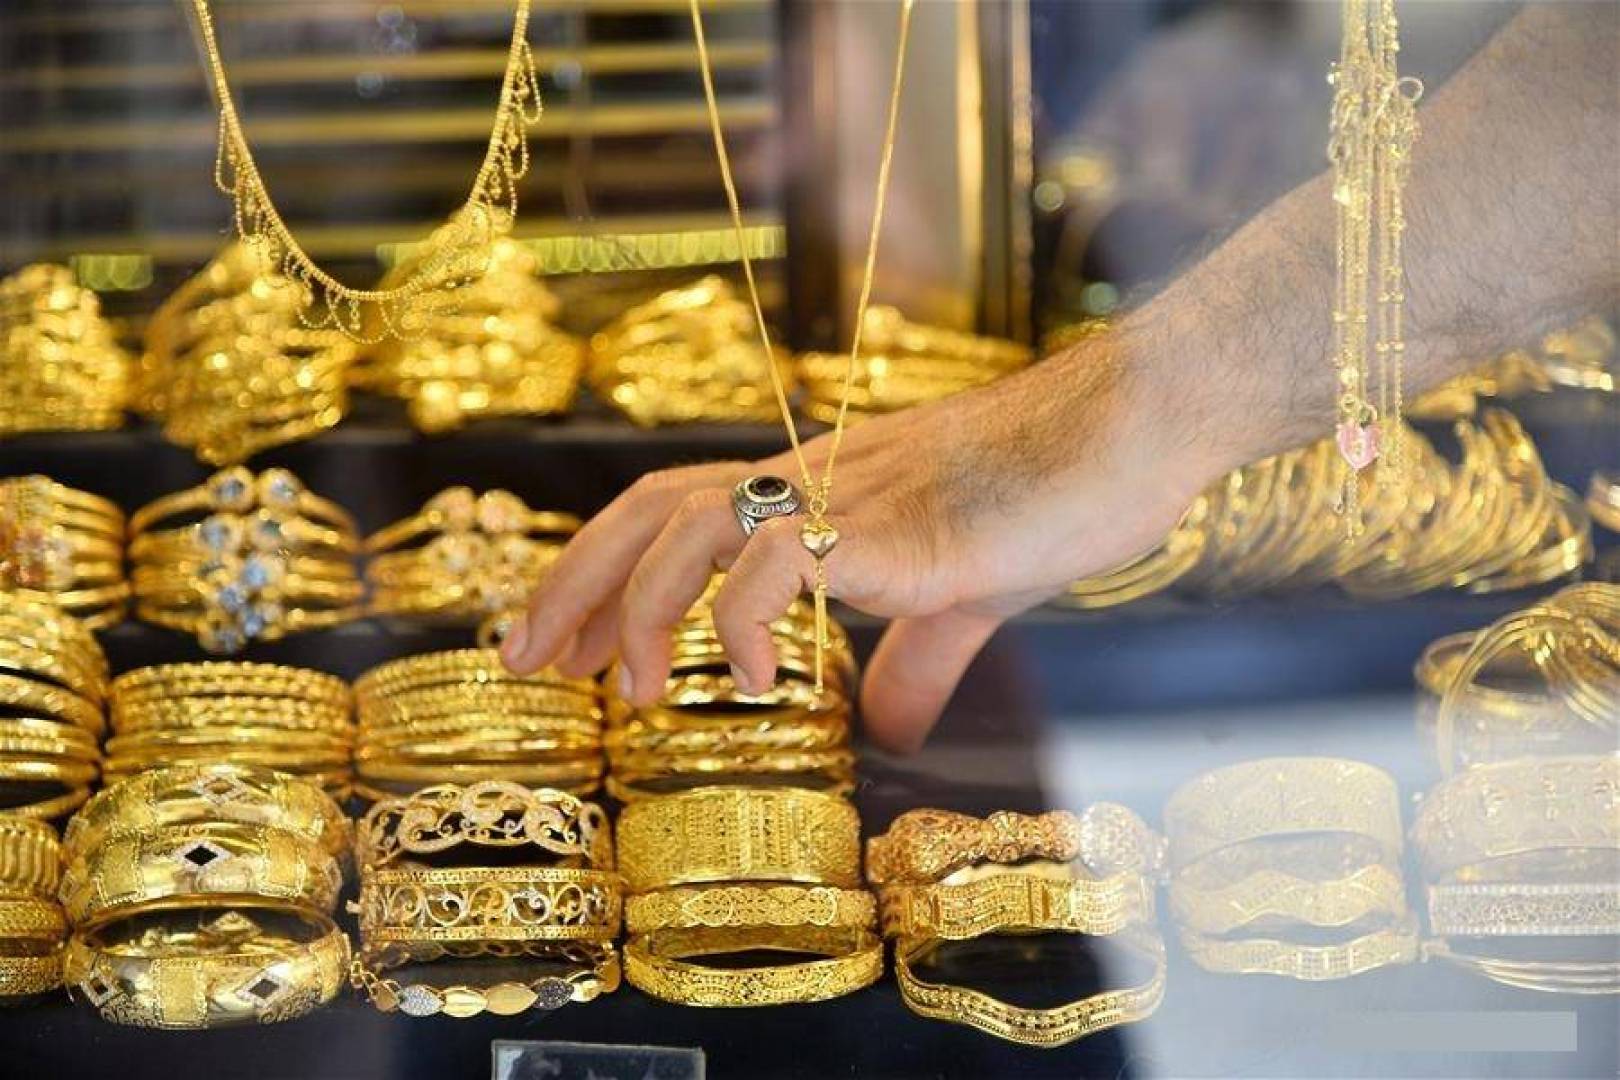 أسعار الذهب في السعودية اليوم الأحد 11 أكتوبر 2020 سعر جرام الذهب في